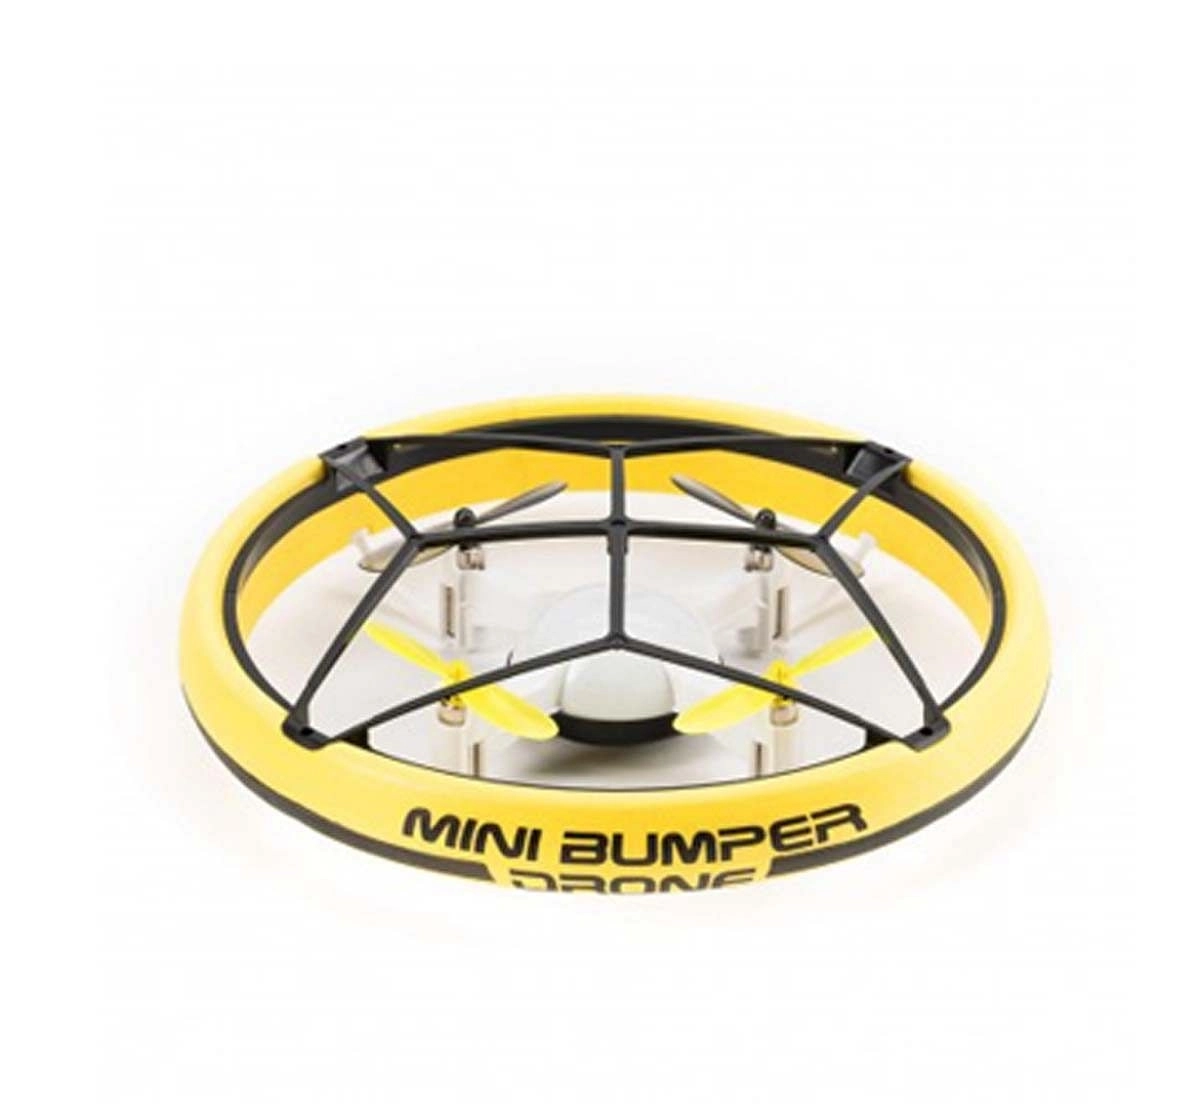 Sliverlite Bumper Drone™ Mini  Remote Control Toys for Kids age 10Y+ 